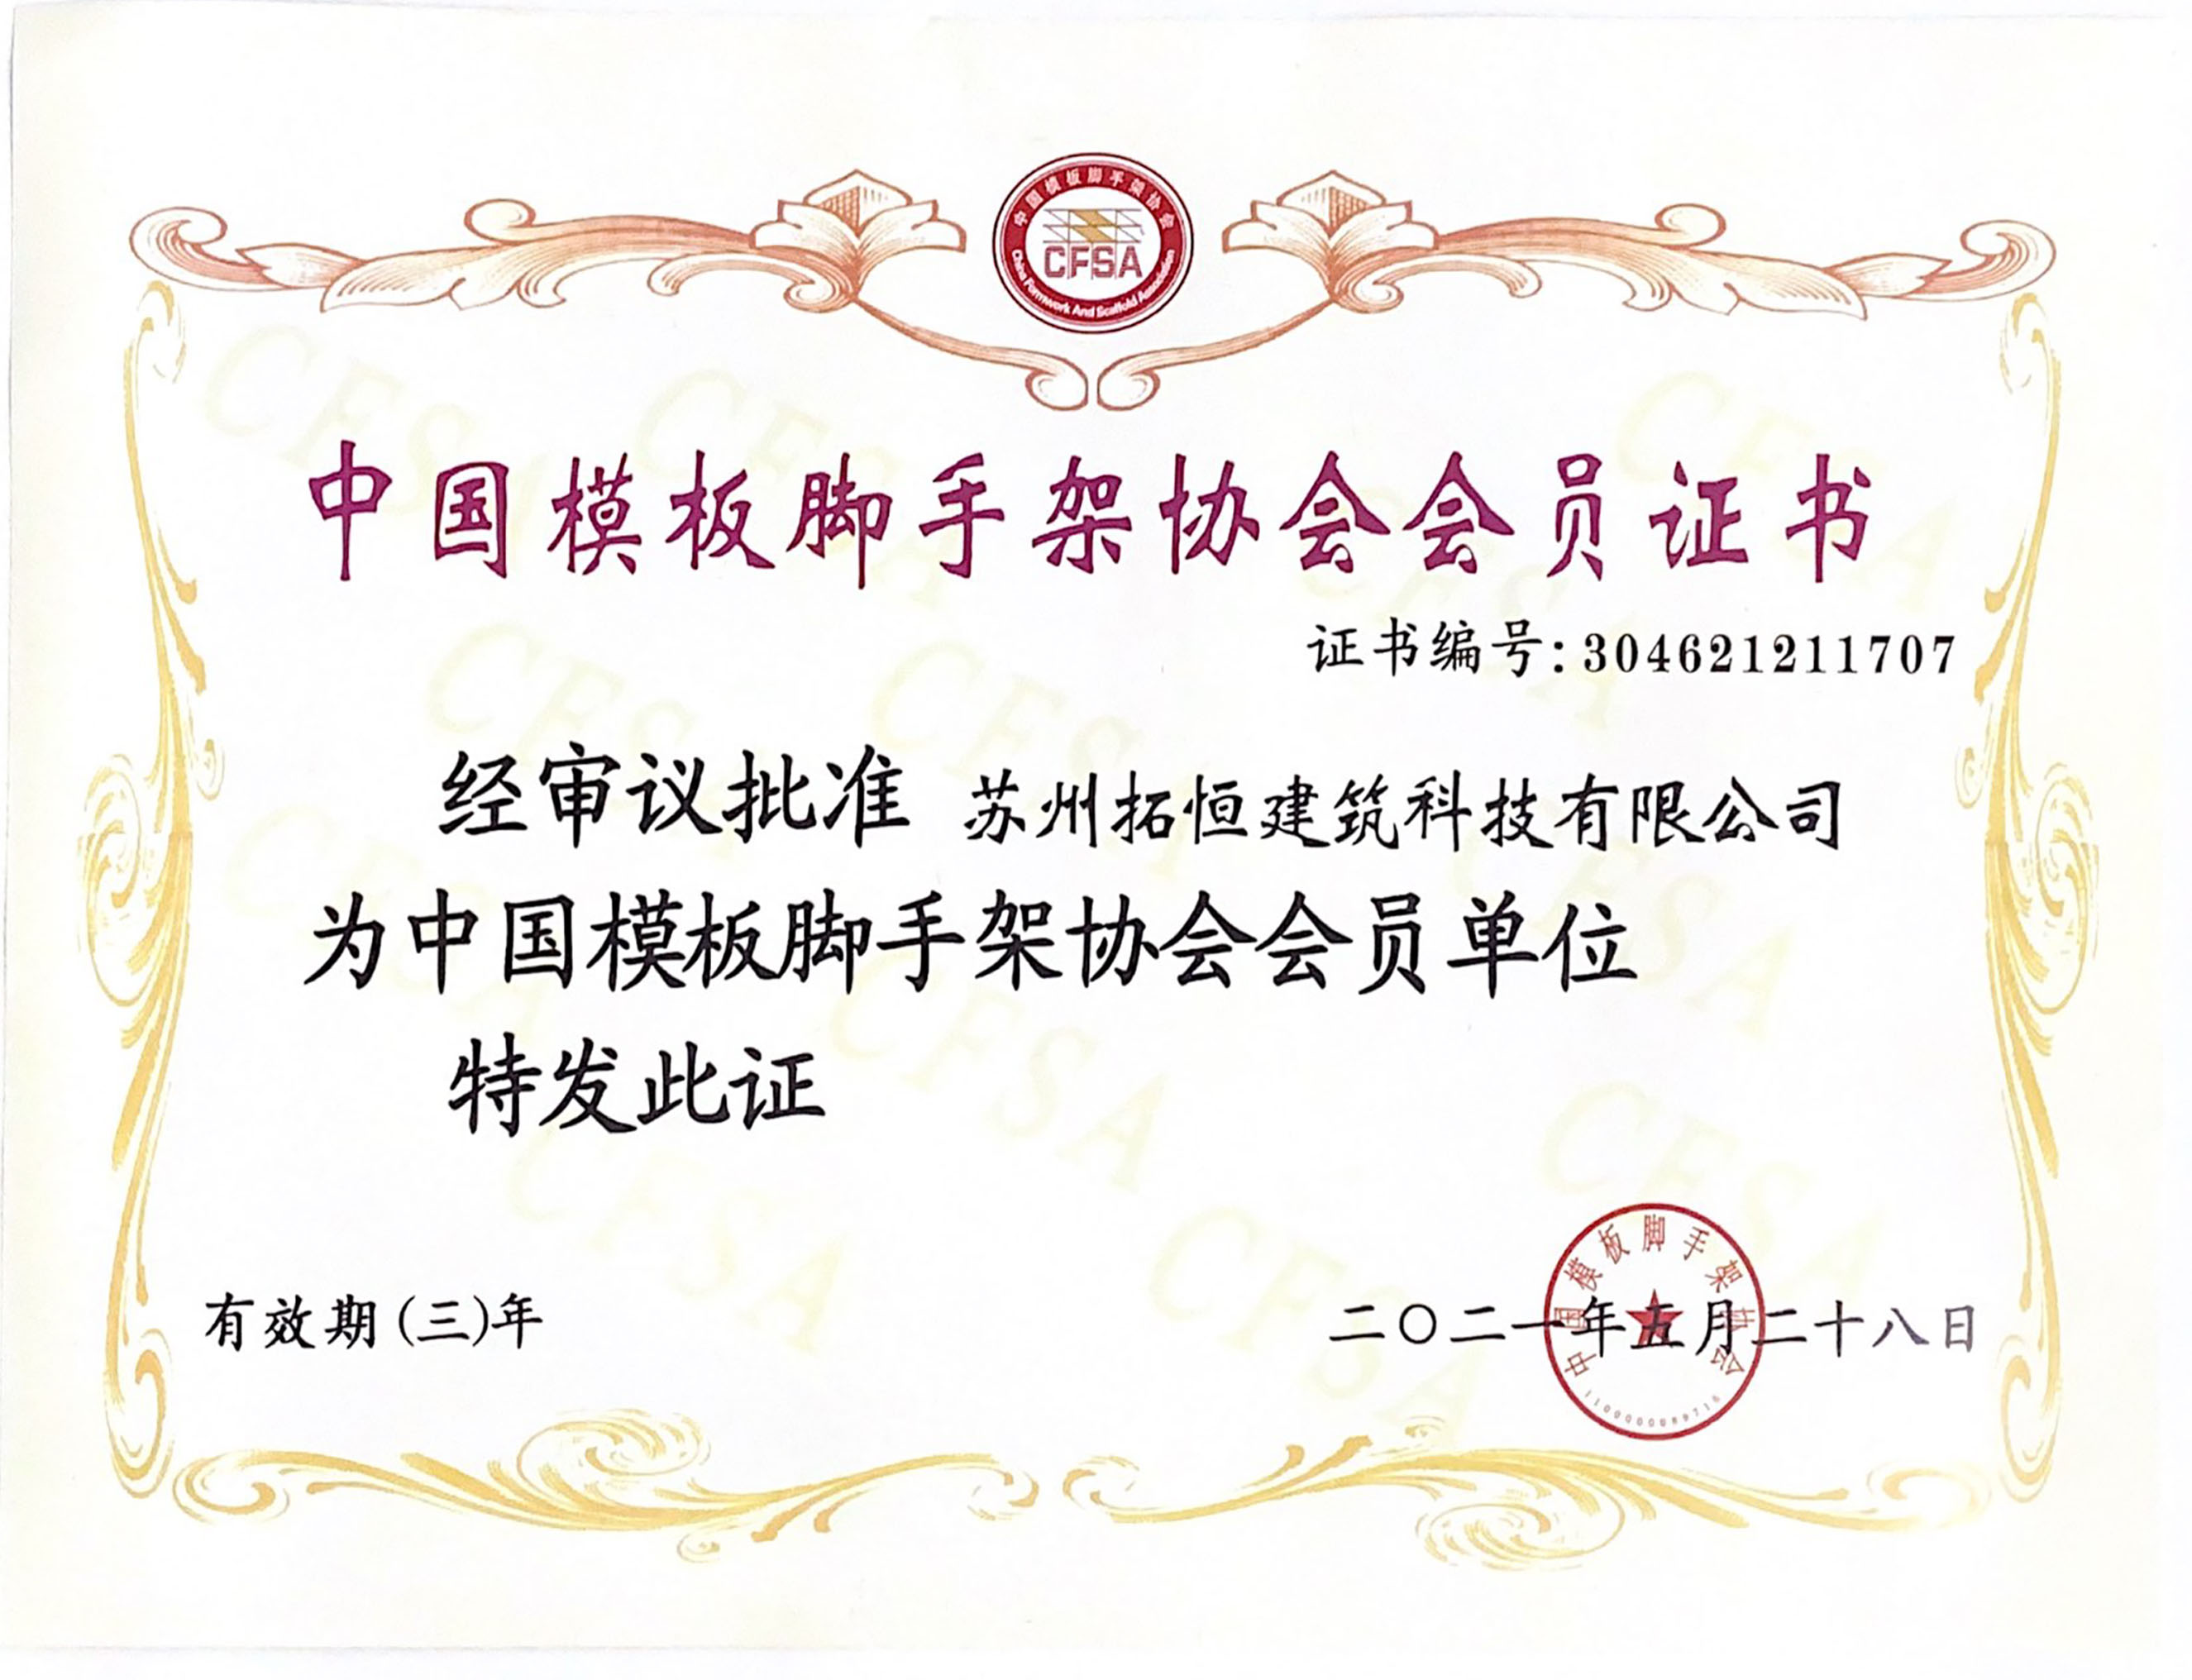 Giấy chứng nhận thành viên của Hiệp hội ván khuôn và giàn giáo Trung Quốc